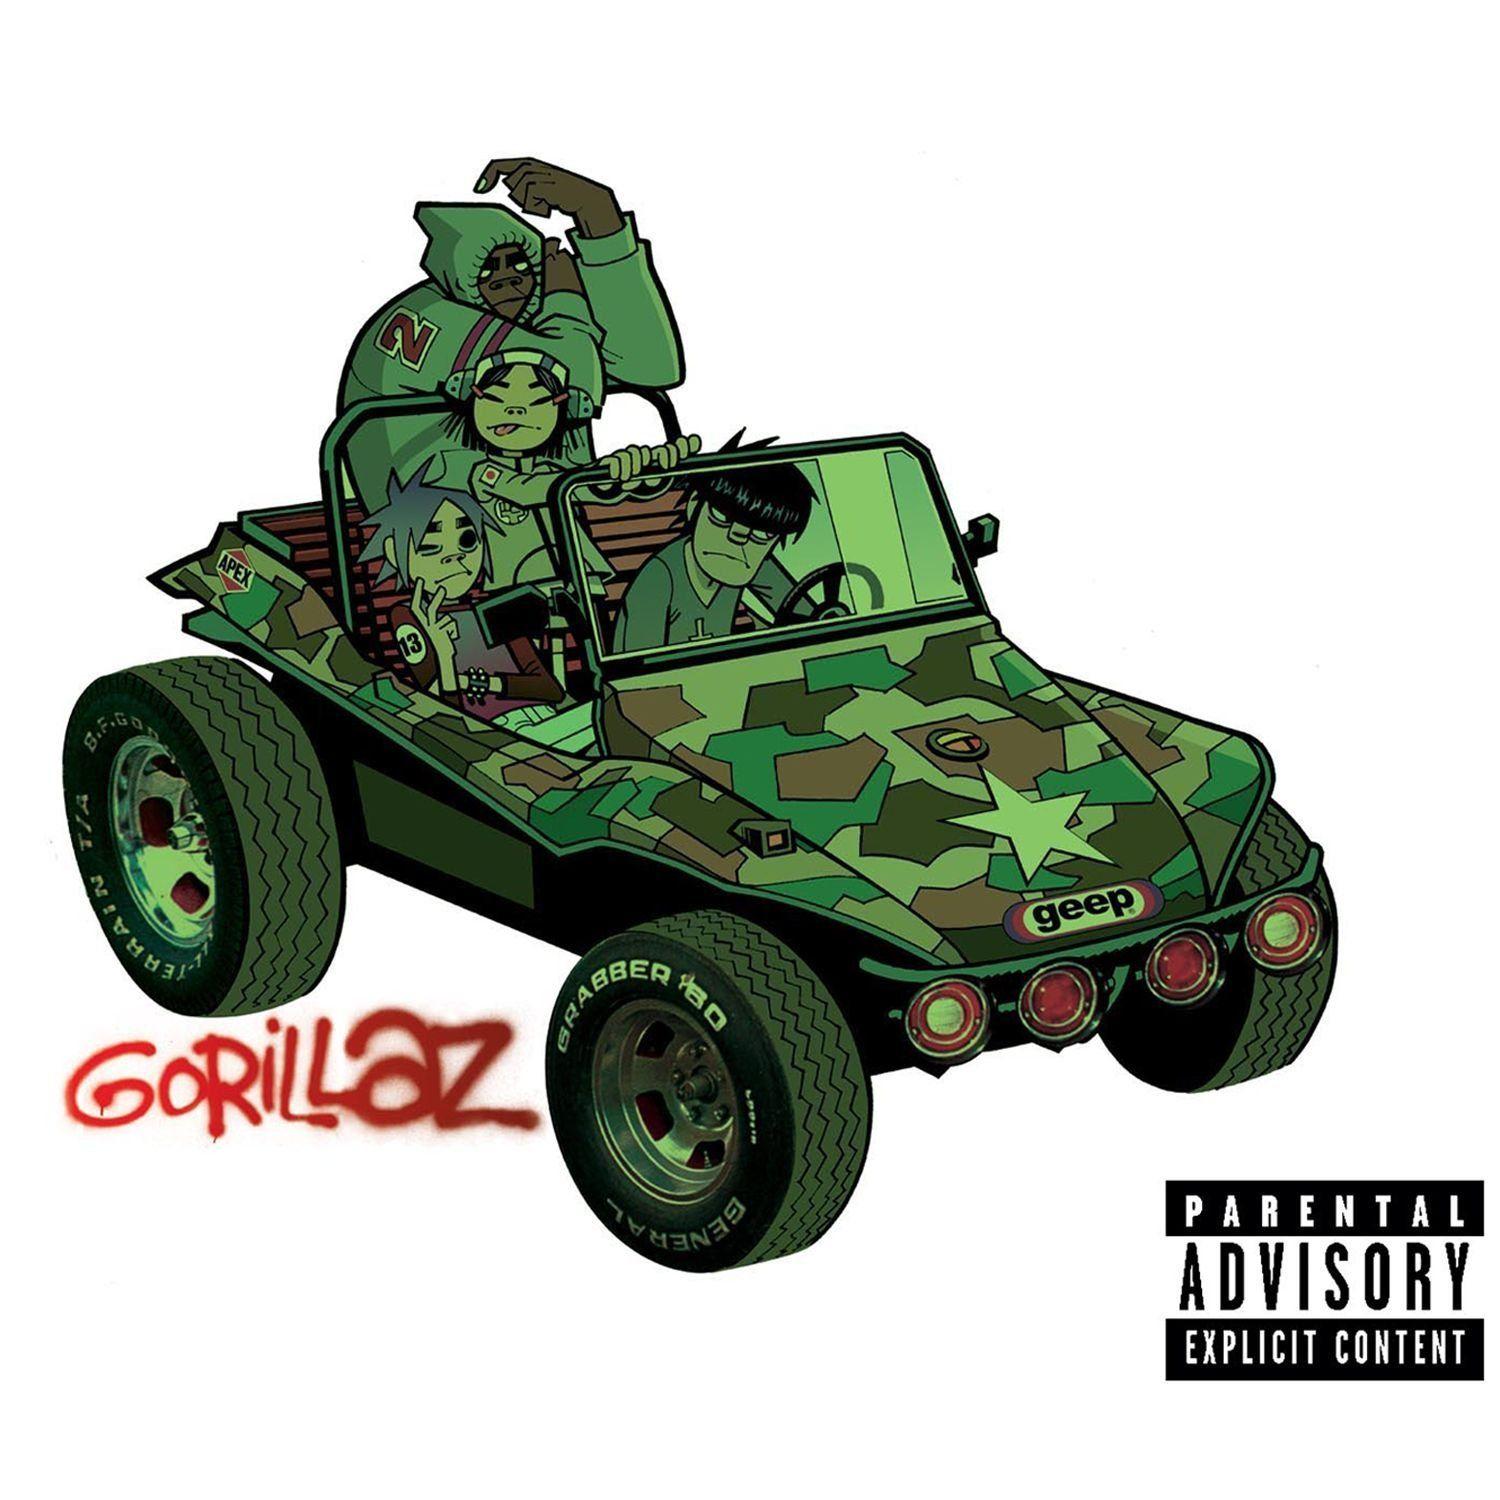 Gorillaz (album)